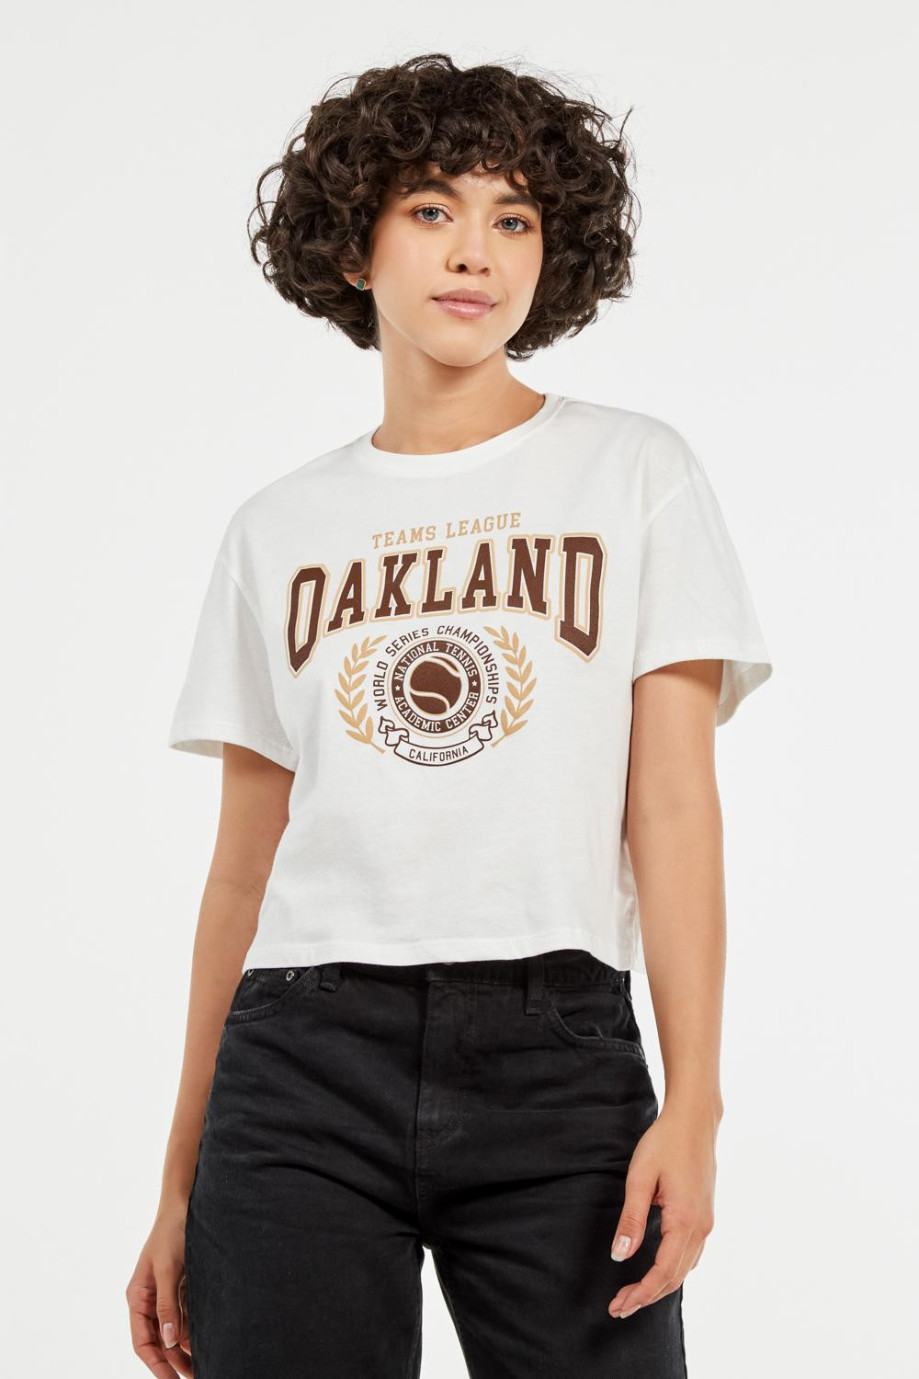 Camiseta crema clara crop top con estampado college de Oakland en frente